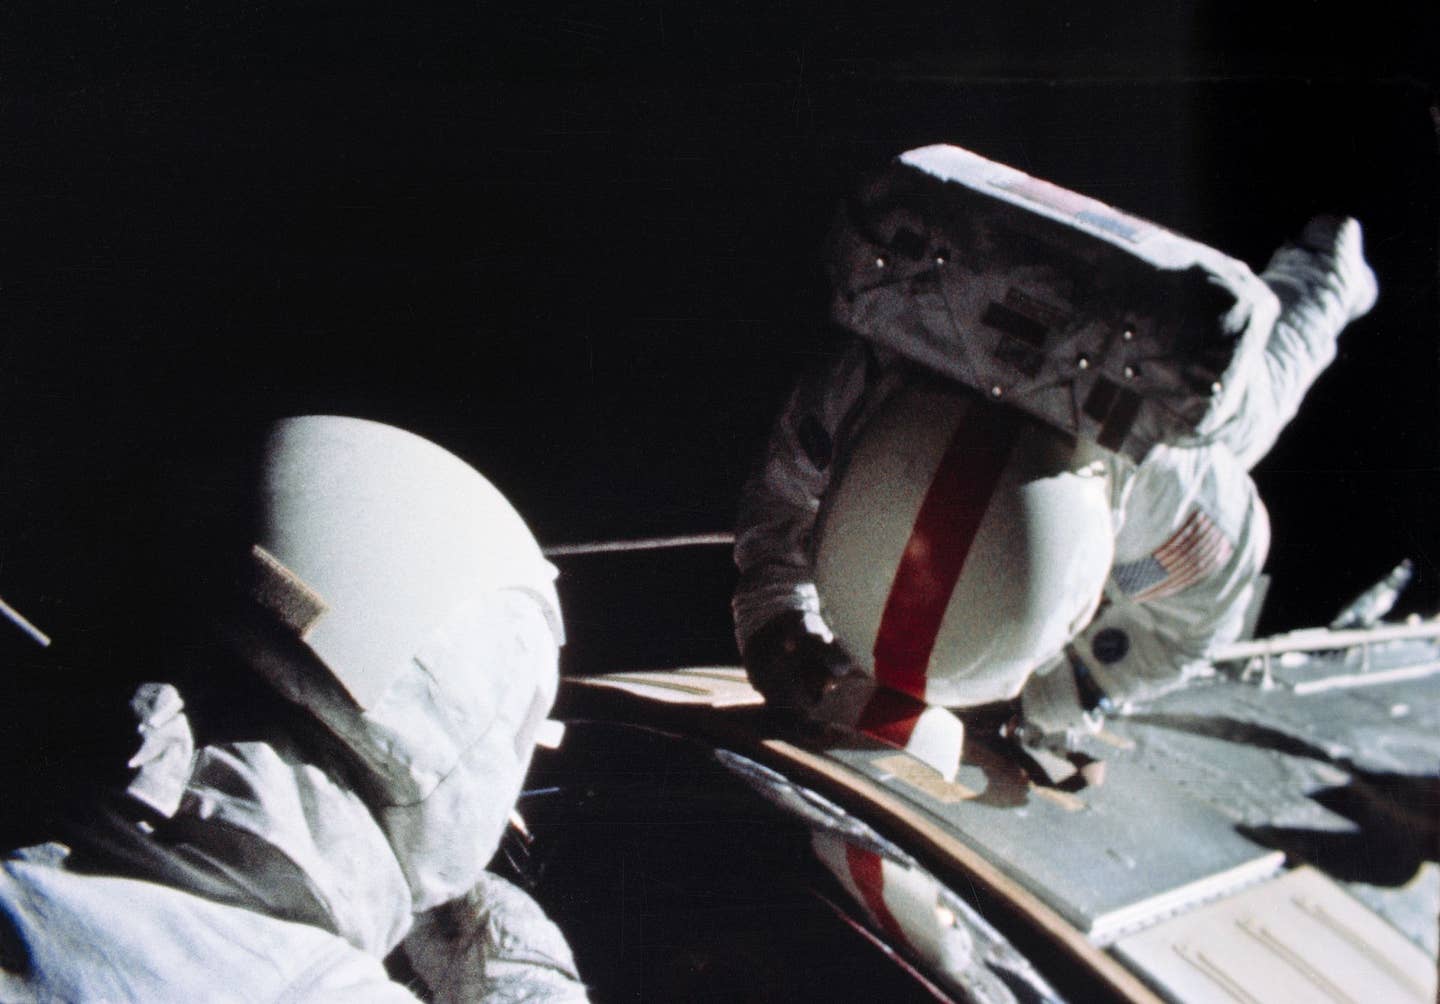 Ken Mattingly performs his deep-space EVA during Apollo 16.